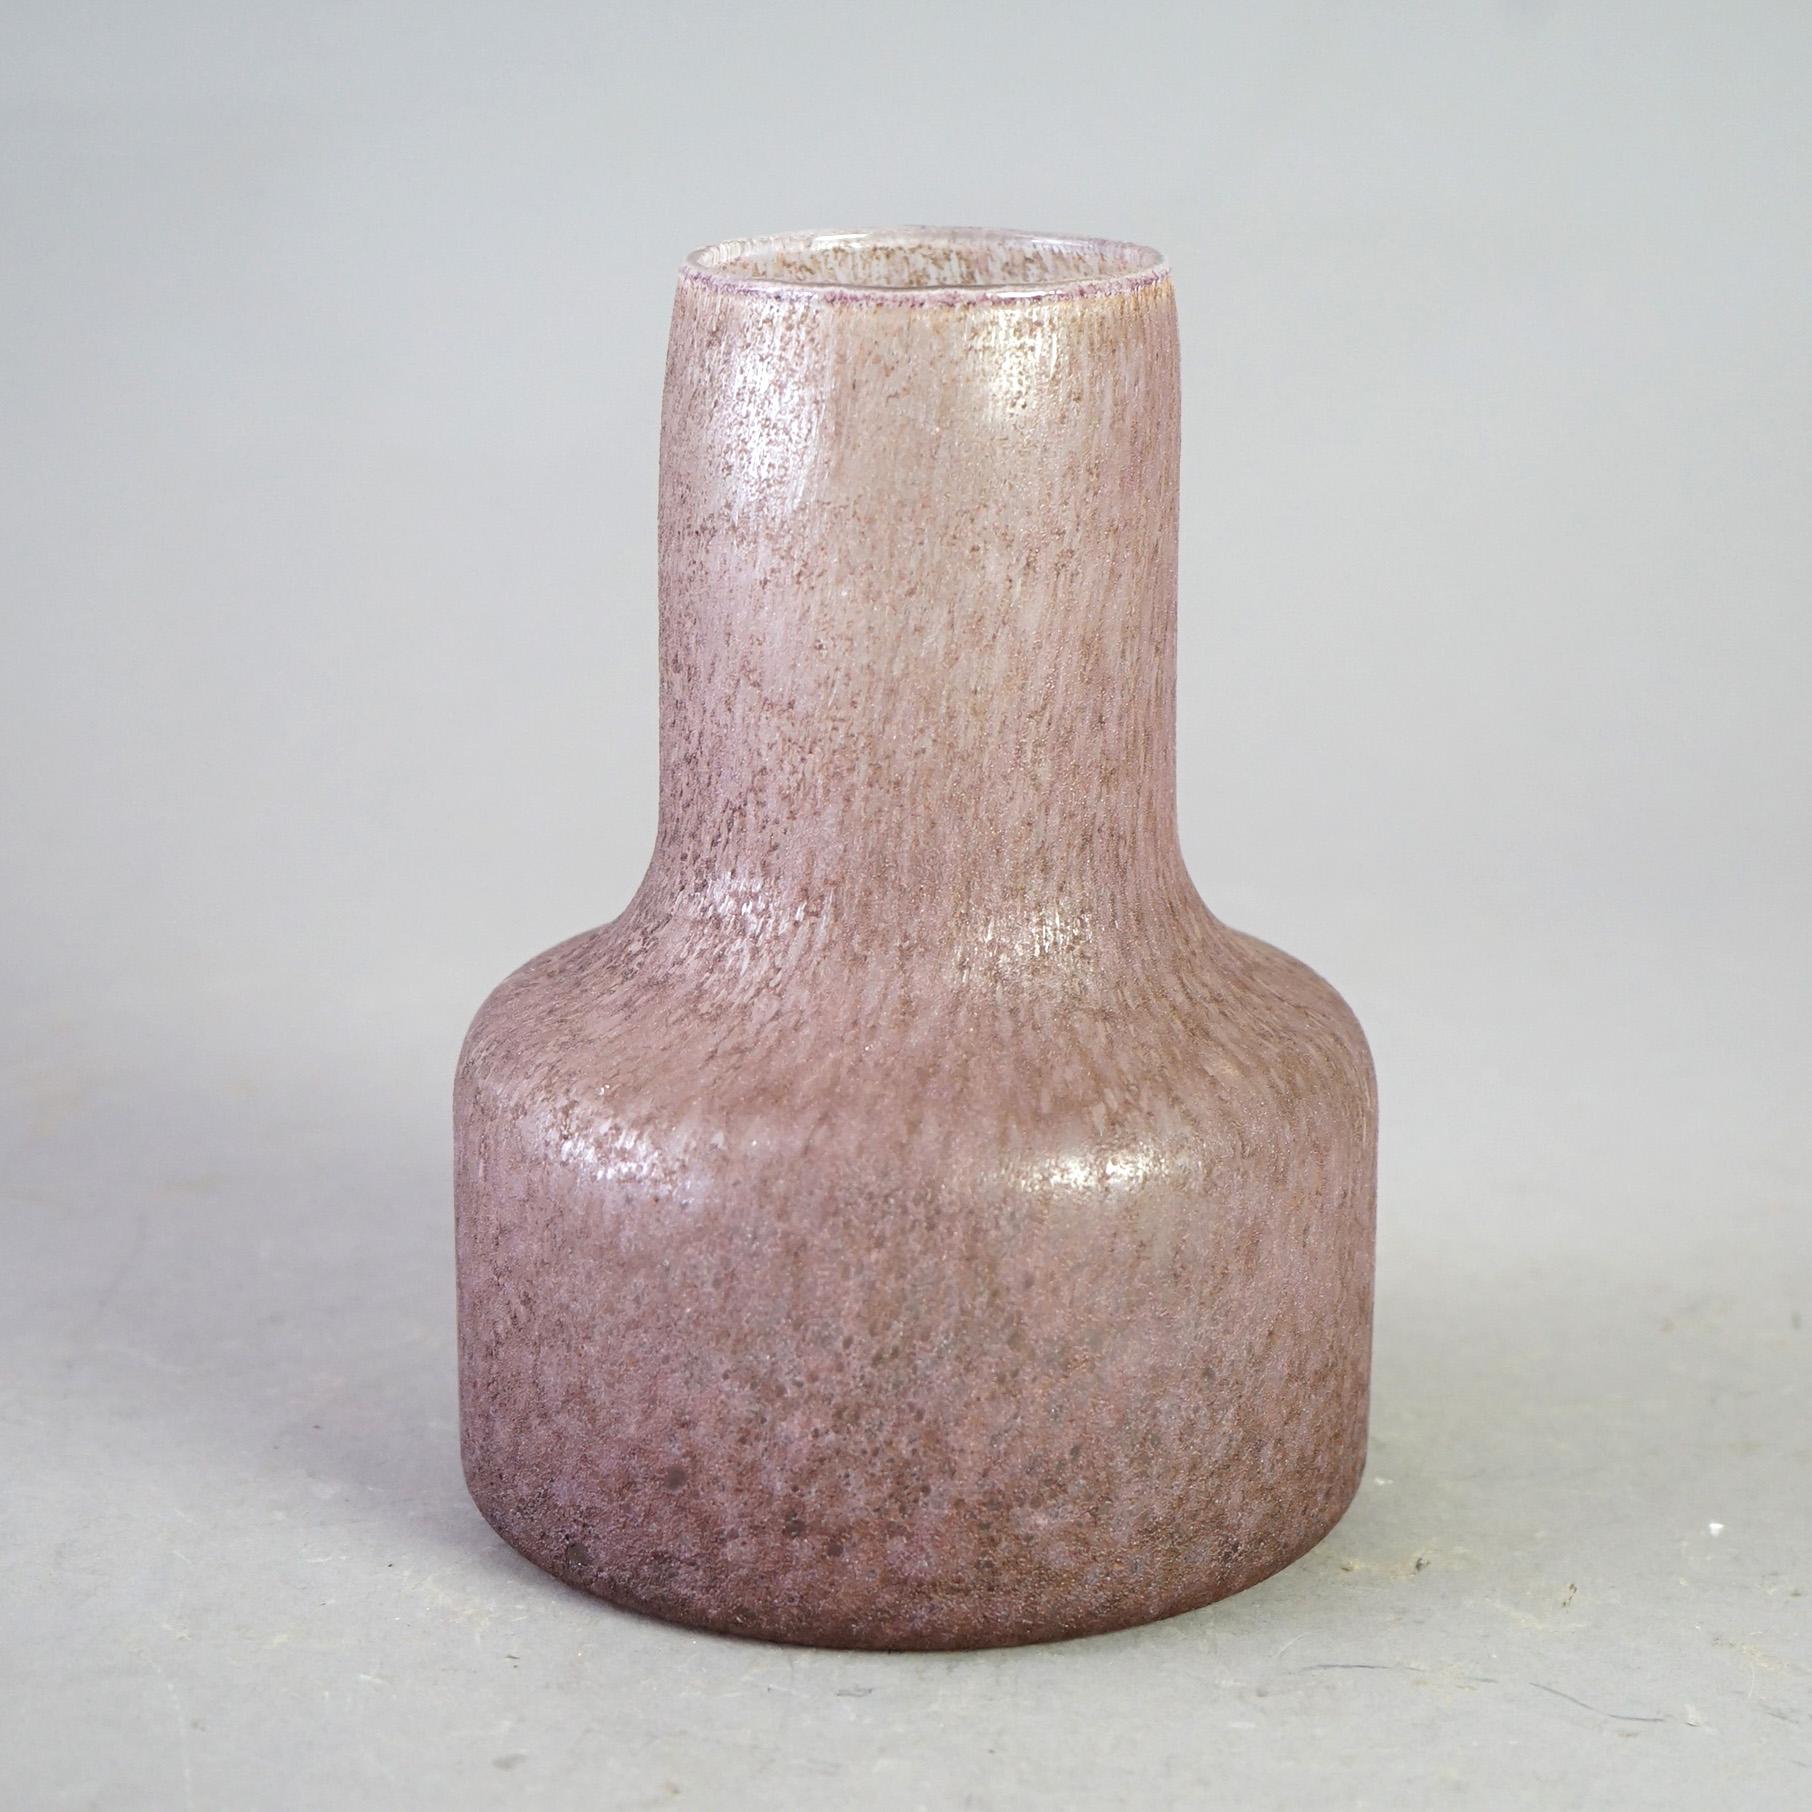 Antique Bauhaus Movement Lavender Chipped Ice Art Glass Bottle Vase Circa 1930

Measures - 7.75